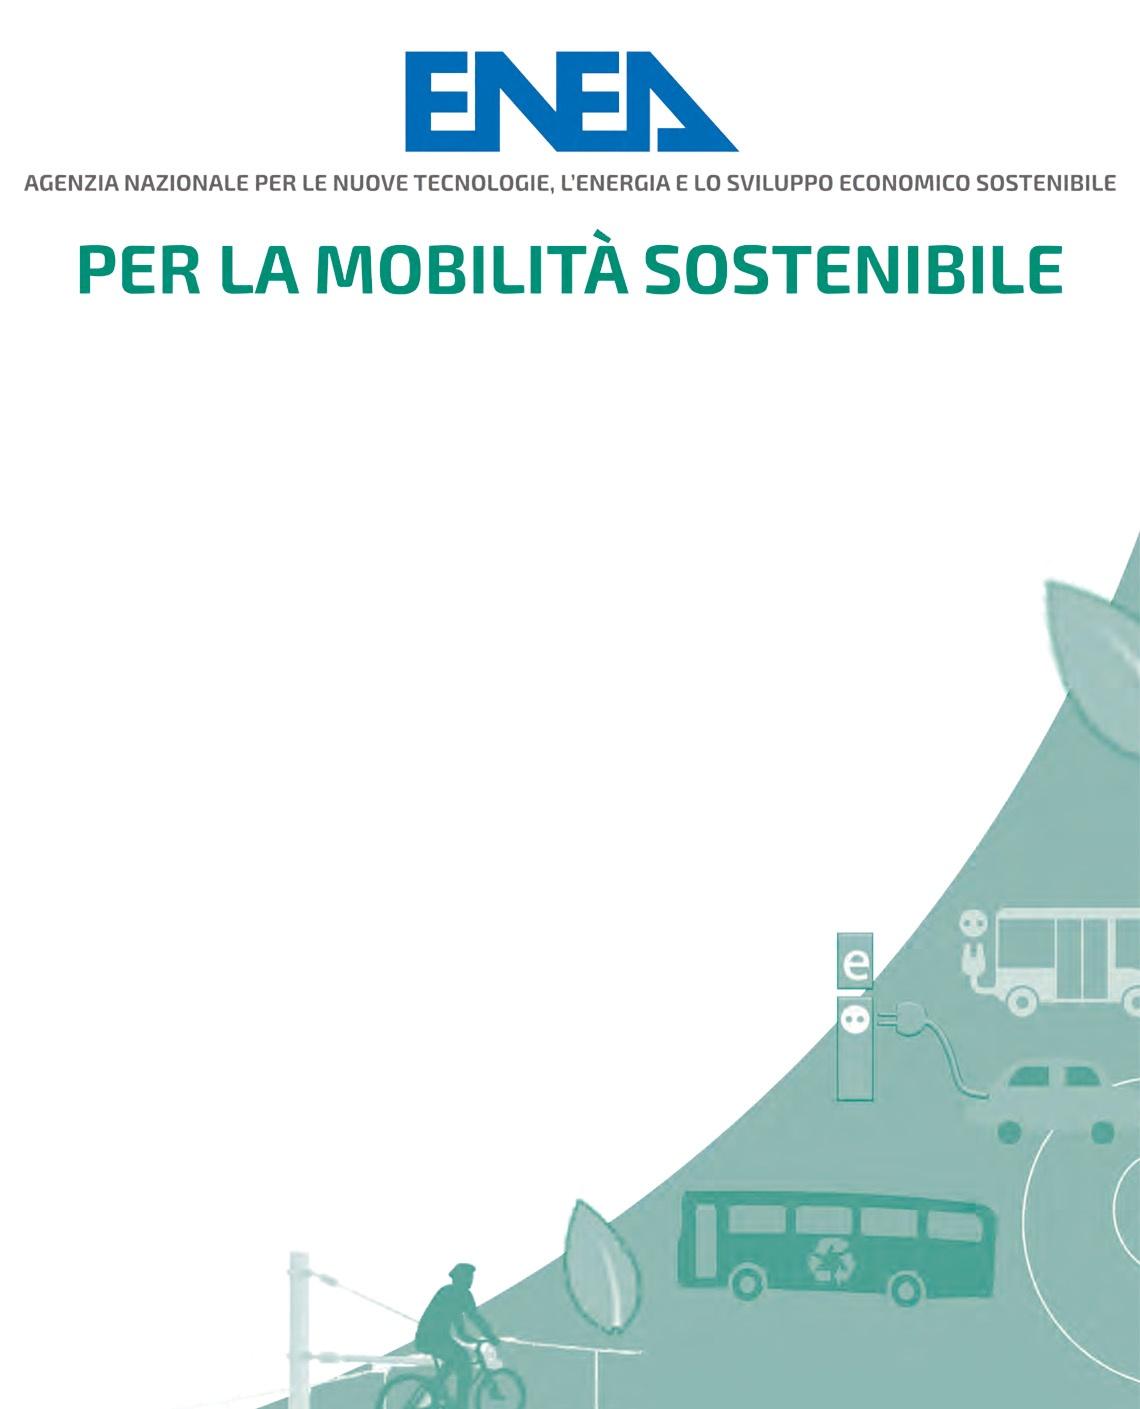 ENEA mobilità sostenibile